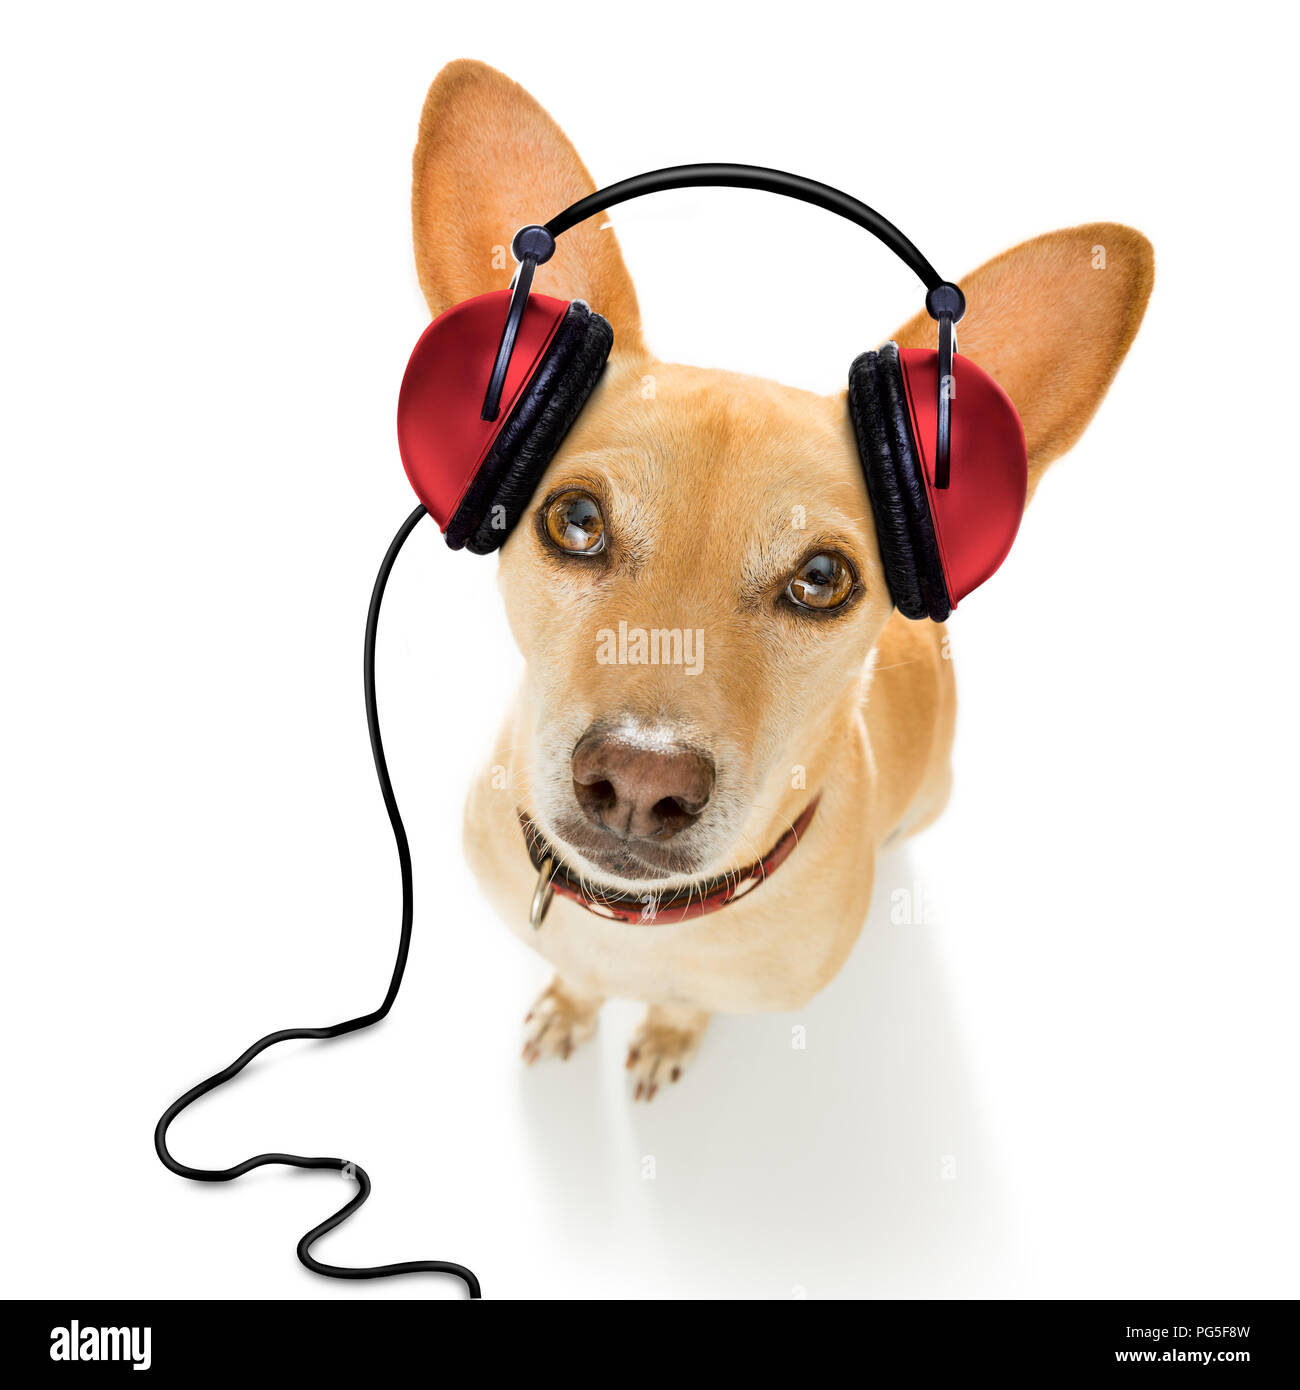 Dj perro Podenco cantando o música con auriculares y reproductor de mp3, aislado sobre fondo blanco Fotografía de stock Alamy